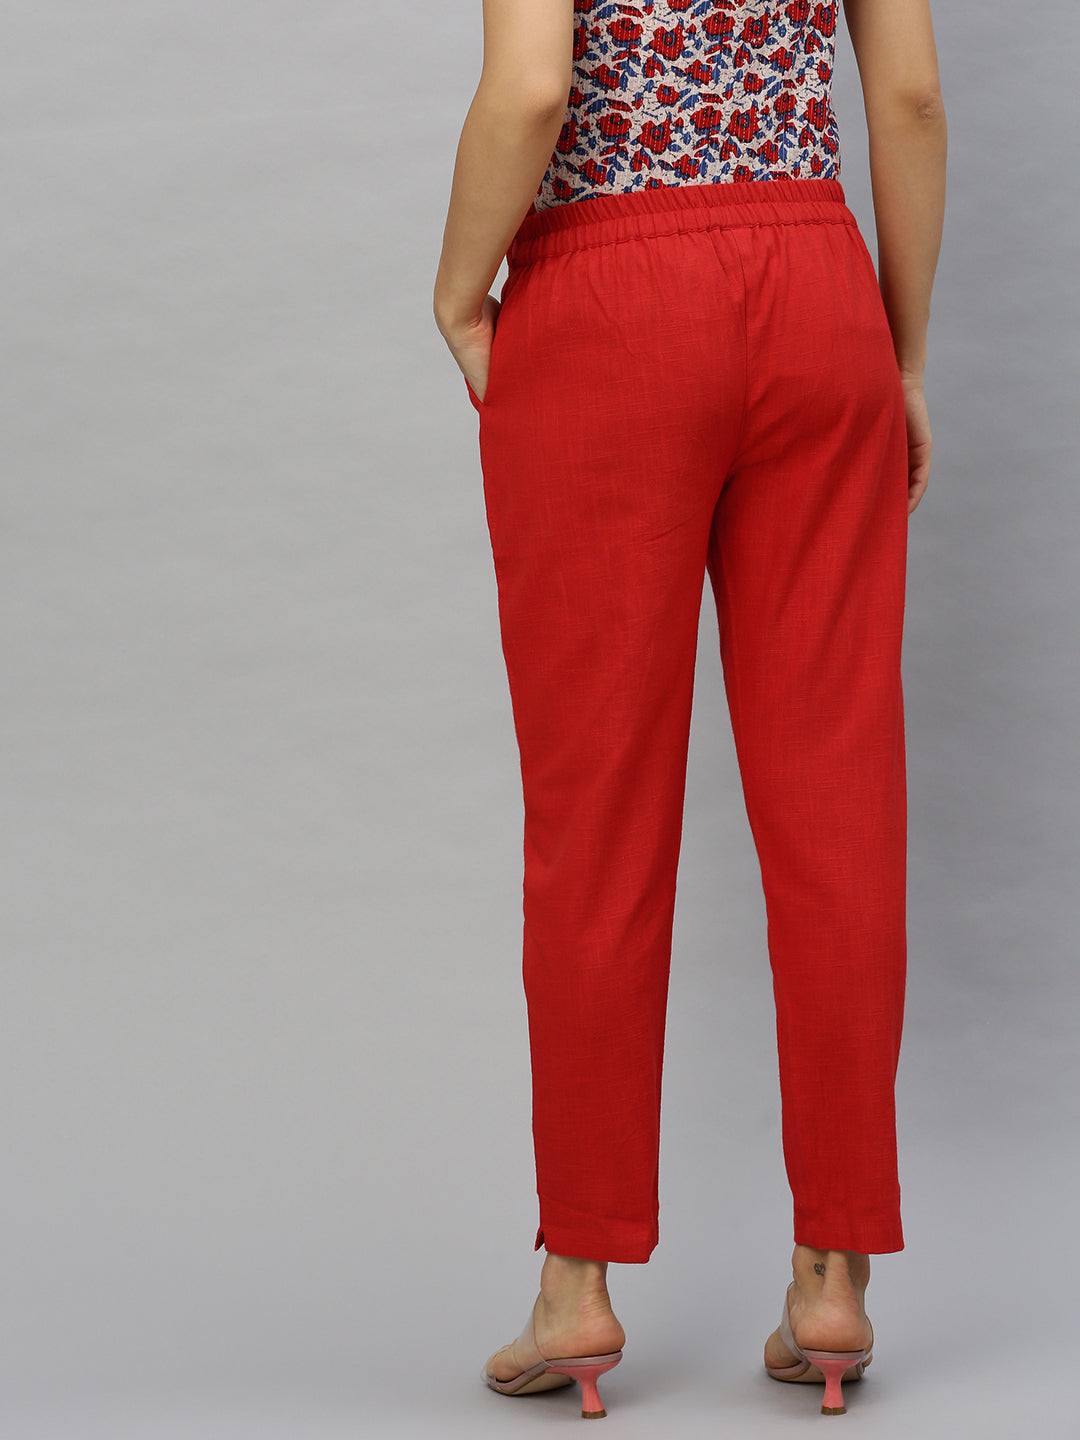 Buy SPAN Regular Fit Cotton Women's Festive Wear Pants | Shoppers Stop